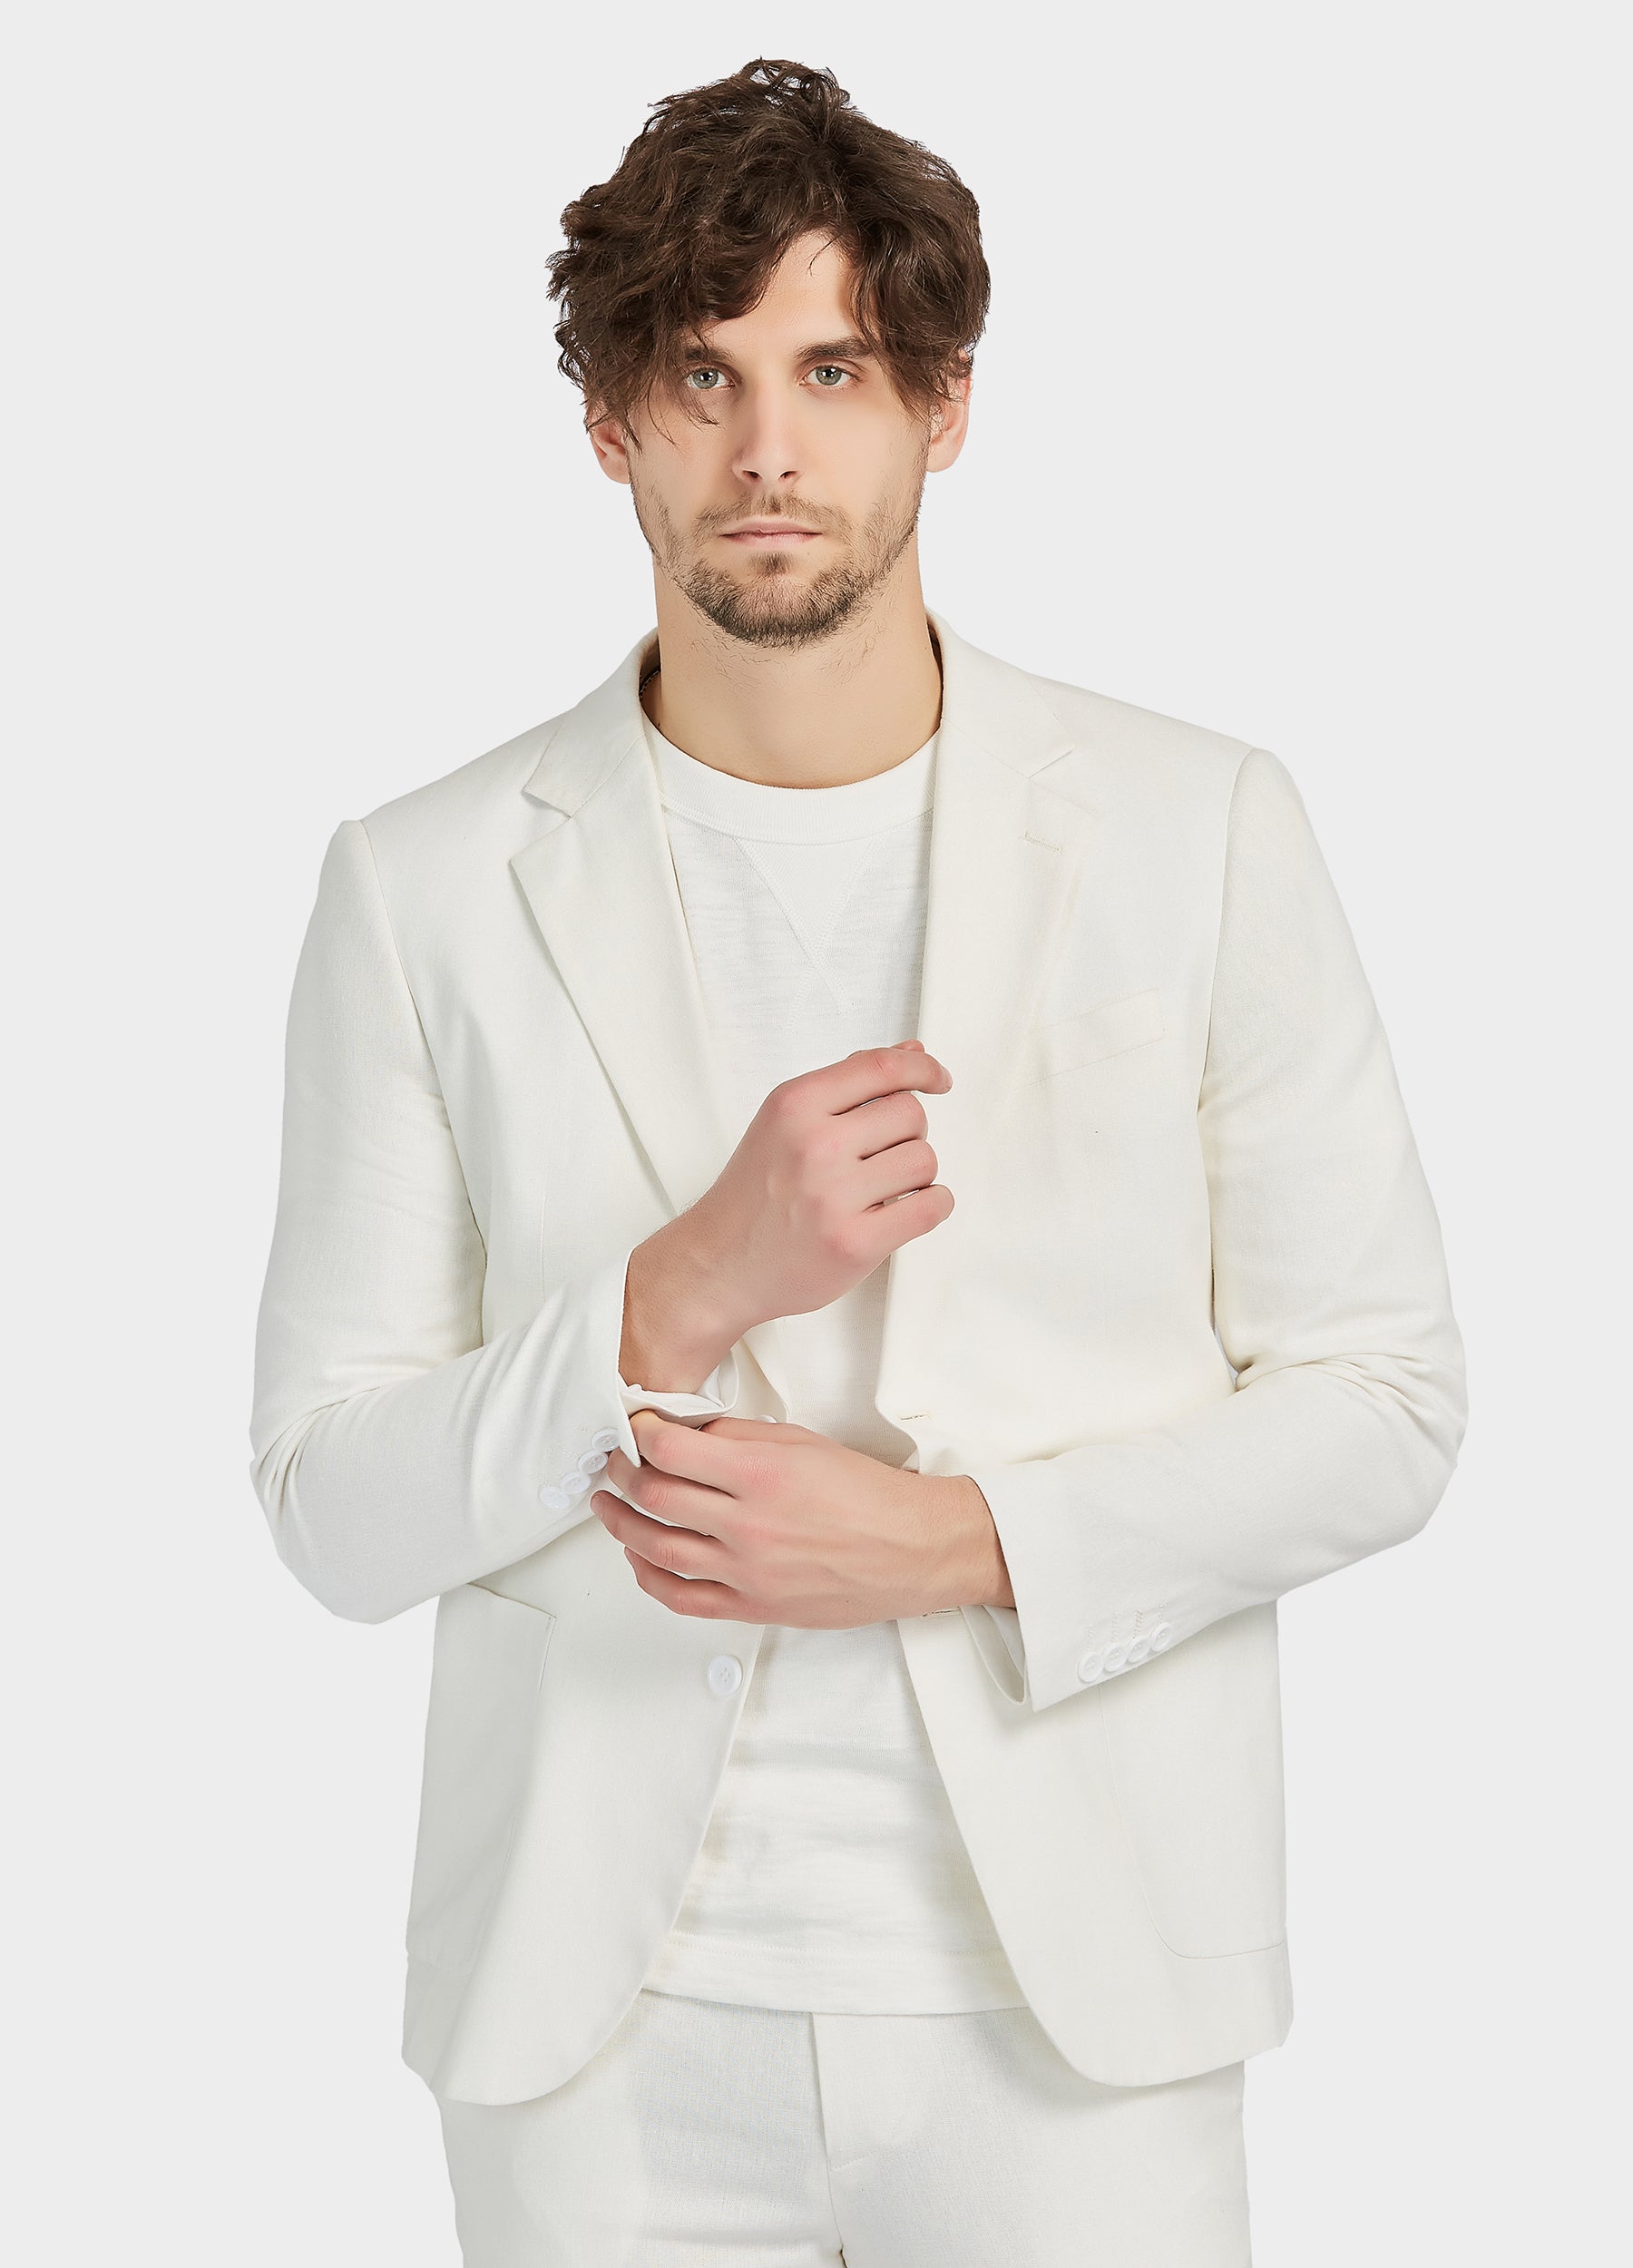 1PA1 Men's Linen Blend Suit Jacket Two Button Business Wedding Slim Fit  Blazer,Mint Green,M 